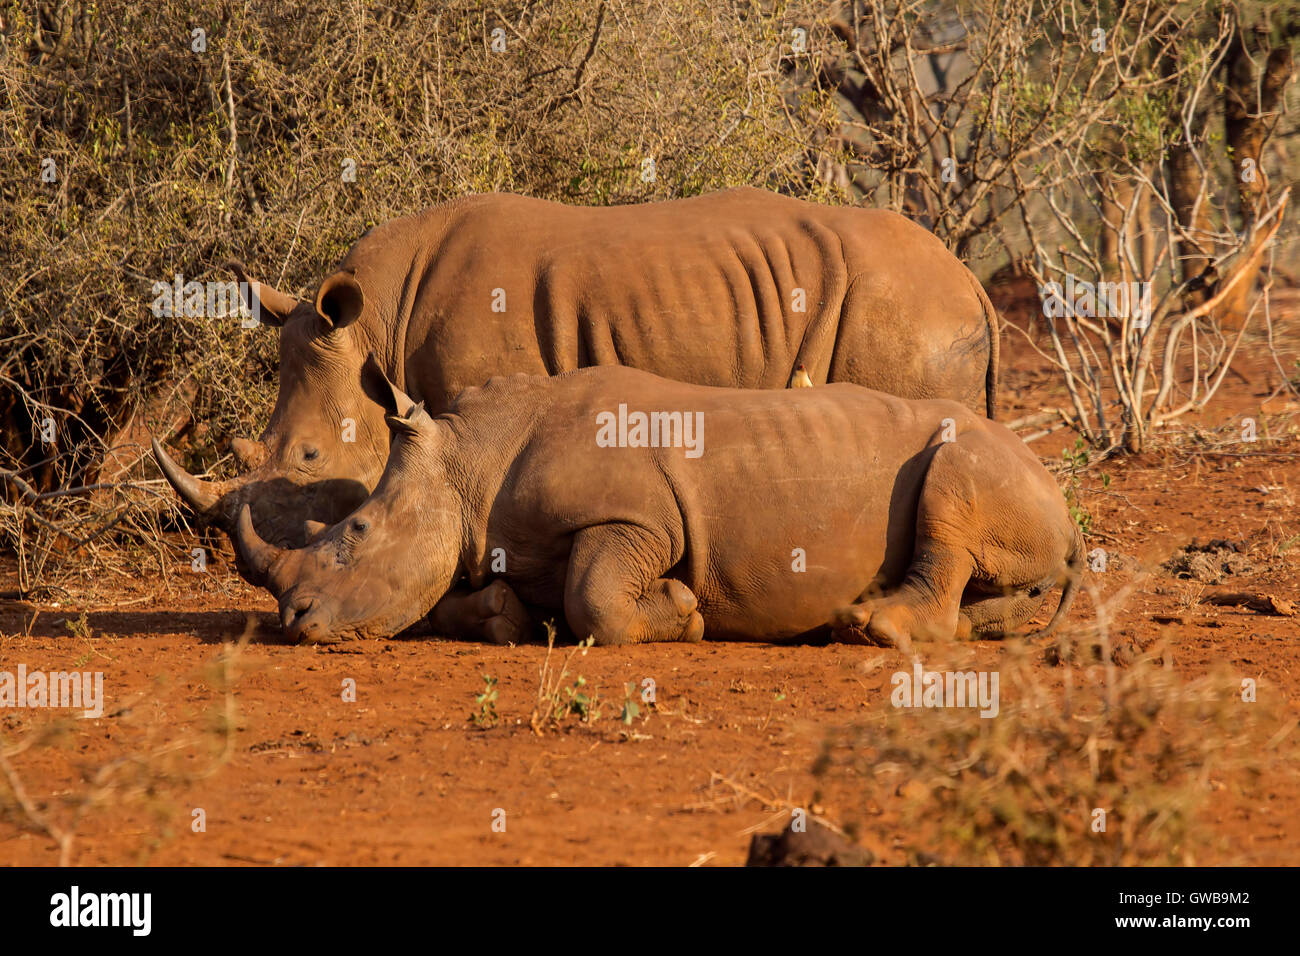 Cerca de dos adultos de rinoceronte blanco (Ceratotherium simum uno acostado en un matorral abierto tanto en el perfil Foto de stock